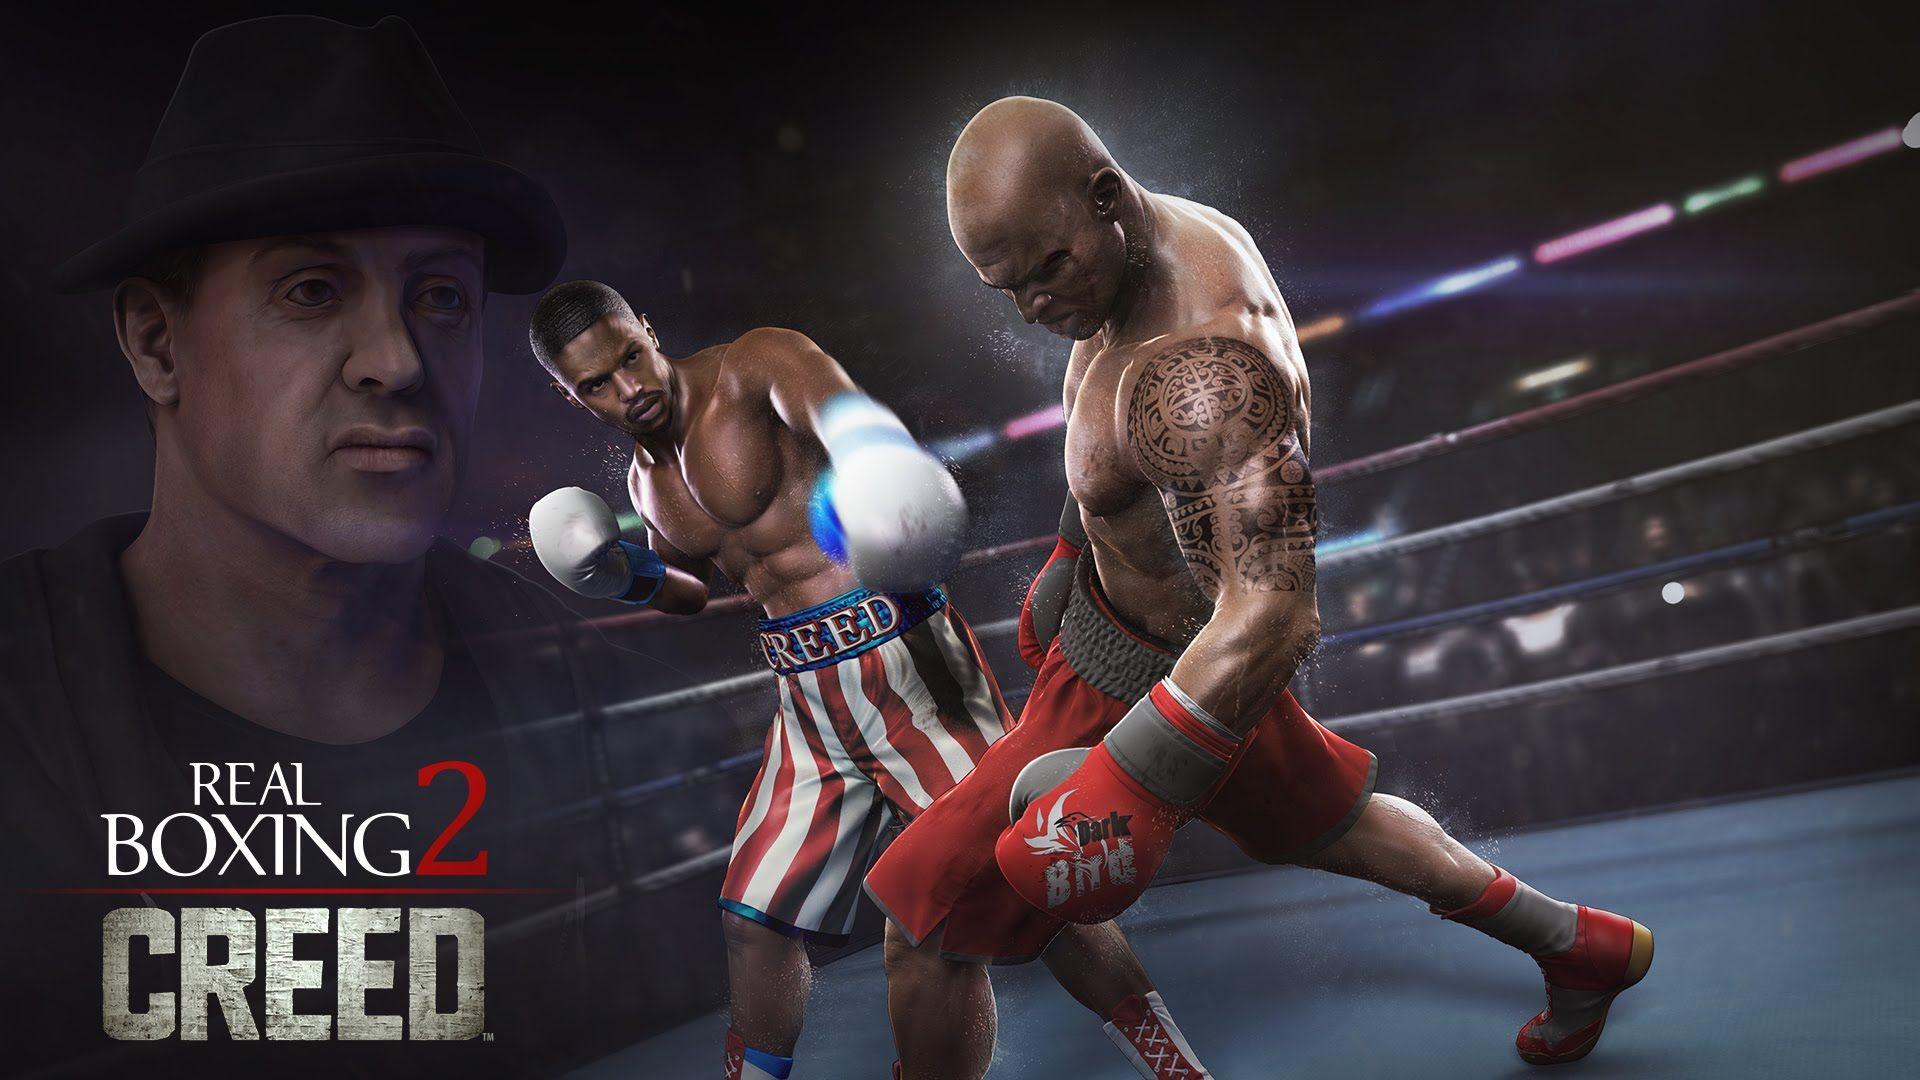 Игры бокс на одного. Real Boxing 2 Creed. Real Boxing 2 боксеры. Real Boxing 2 Rocky (real Boxing 2 Creed)трейлер. Бокс на Xbox Rocky.